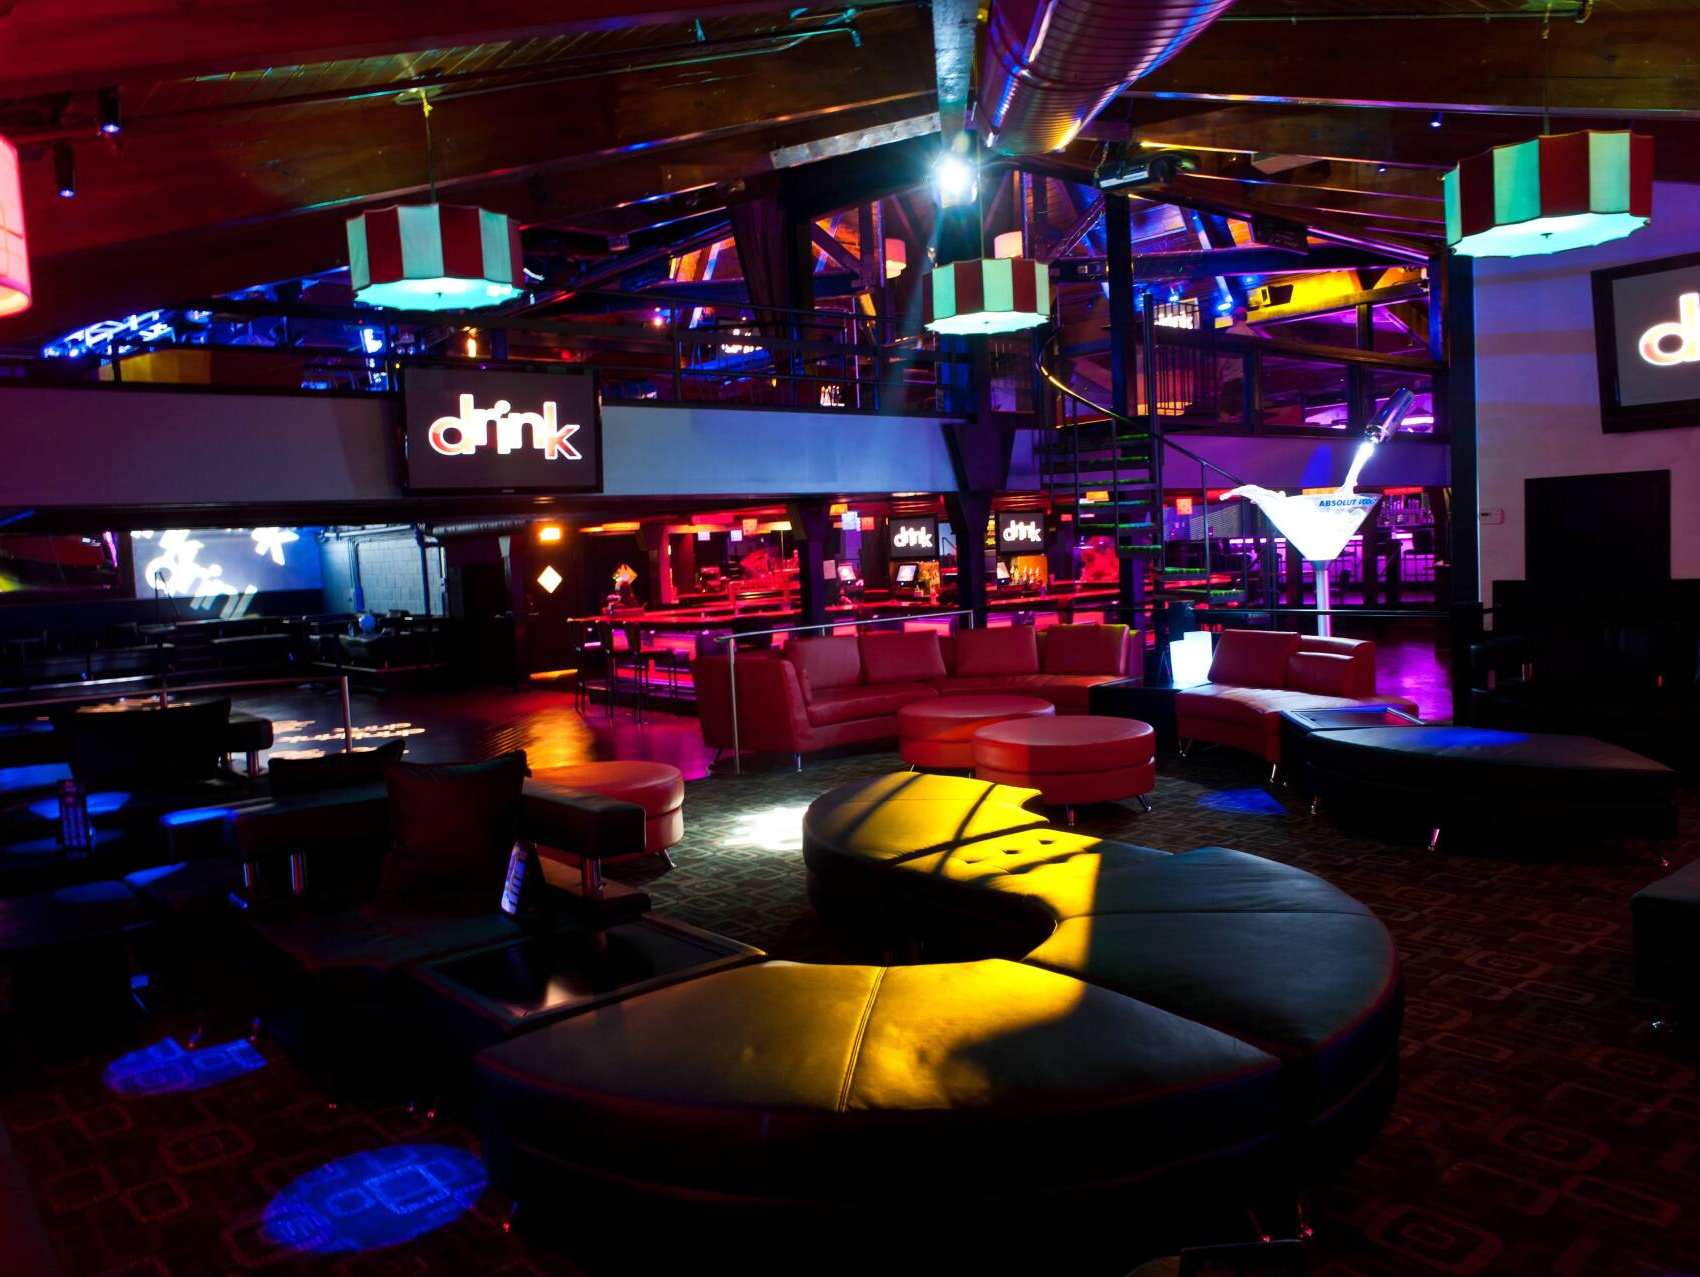 Drink Nightclub Chicagolands World Class Nightclub Located in Schaumburg, IL picture